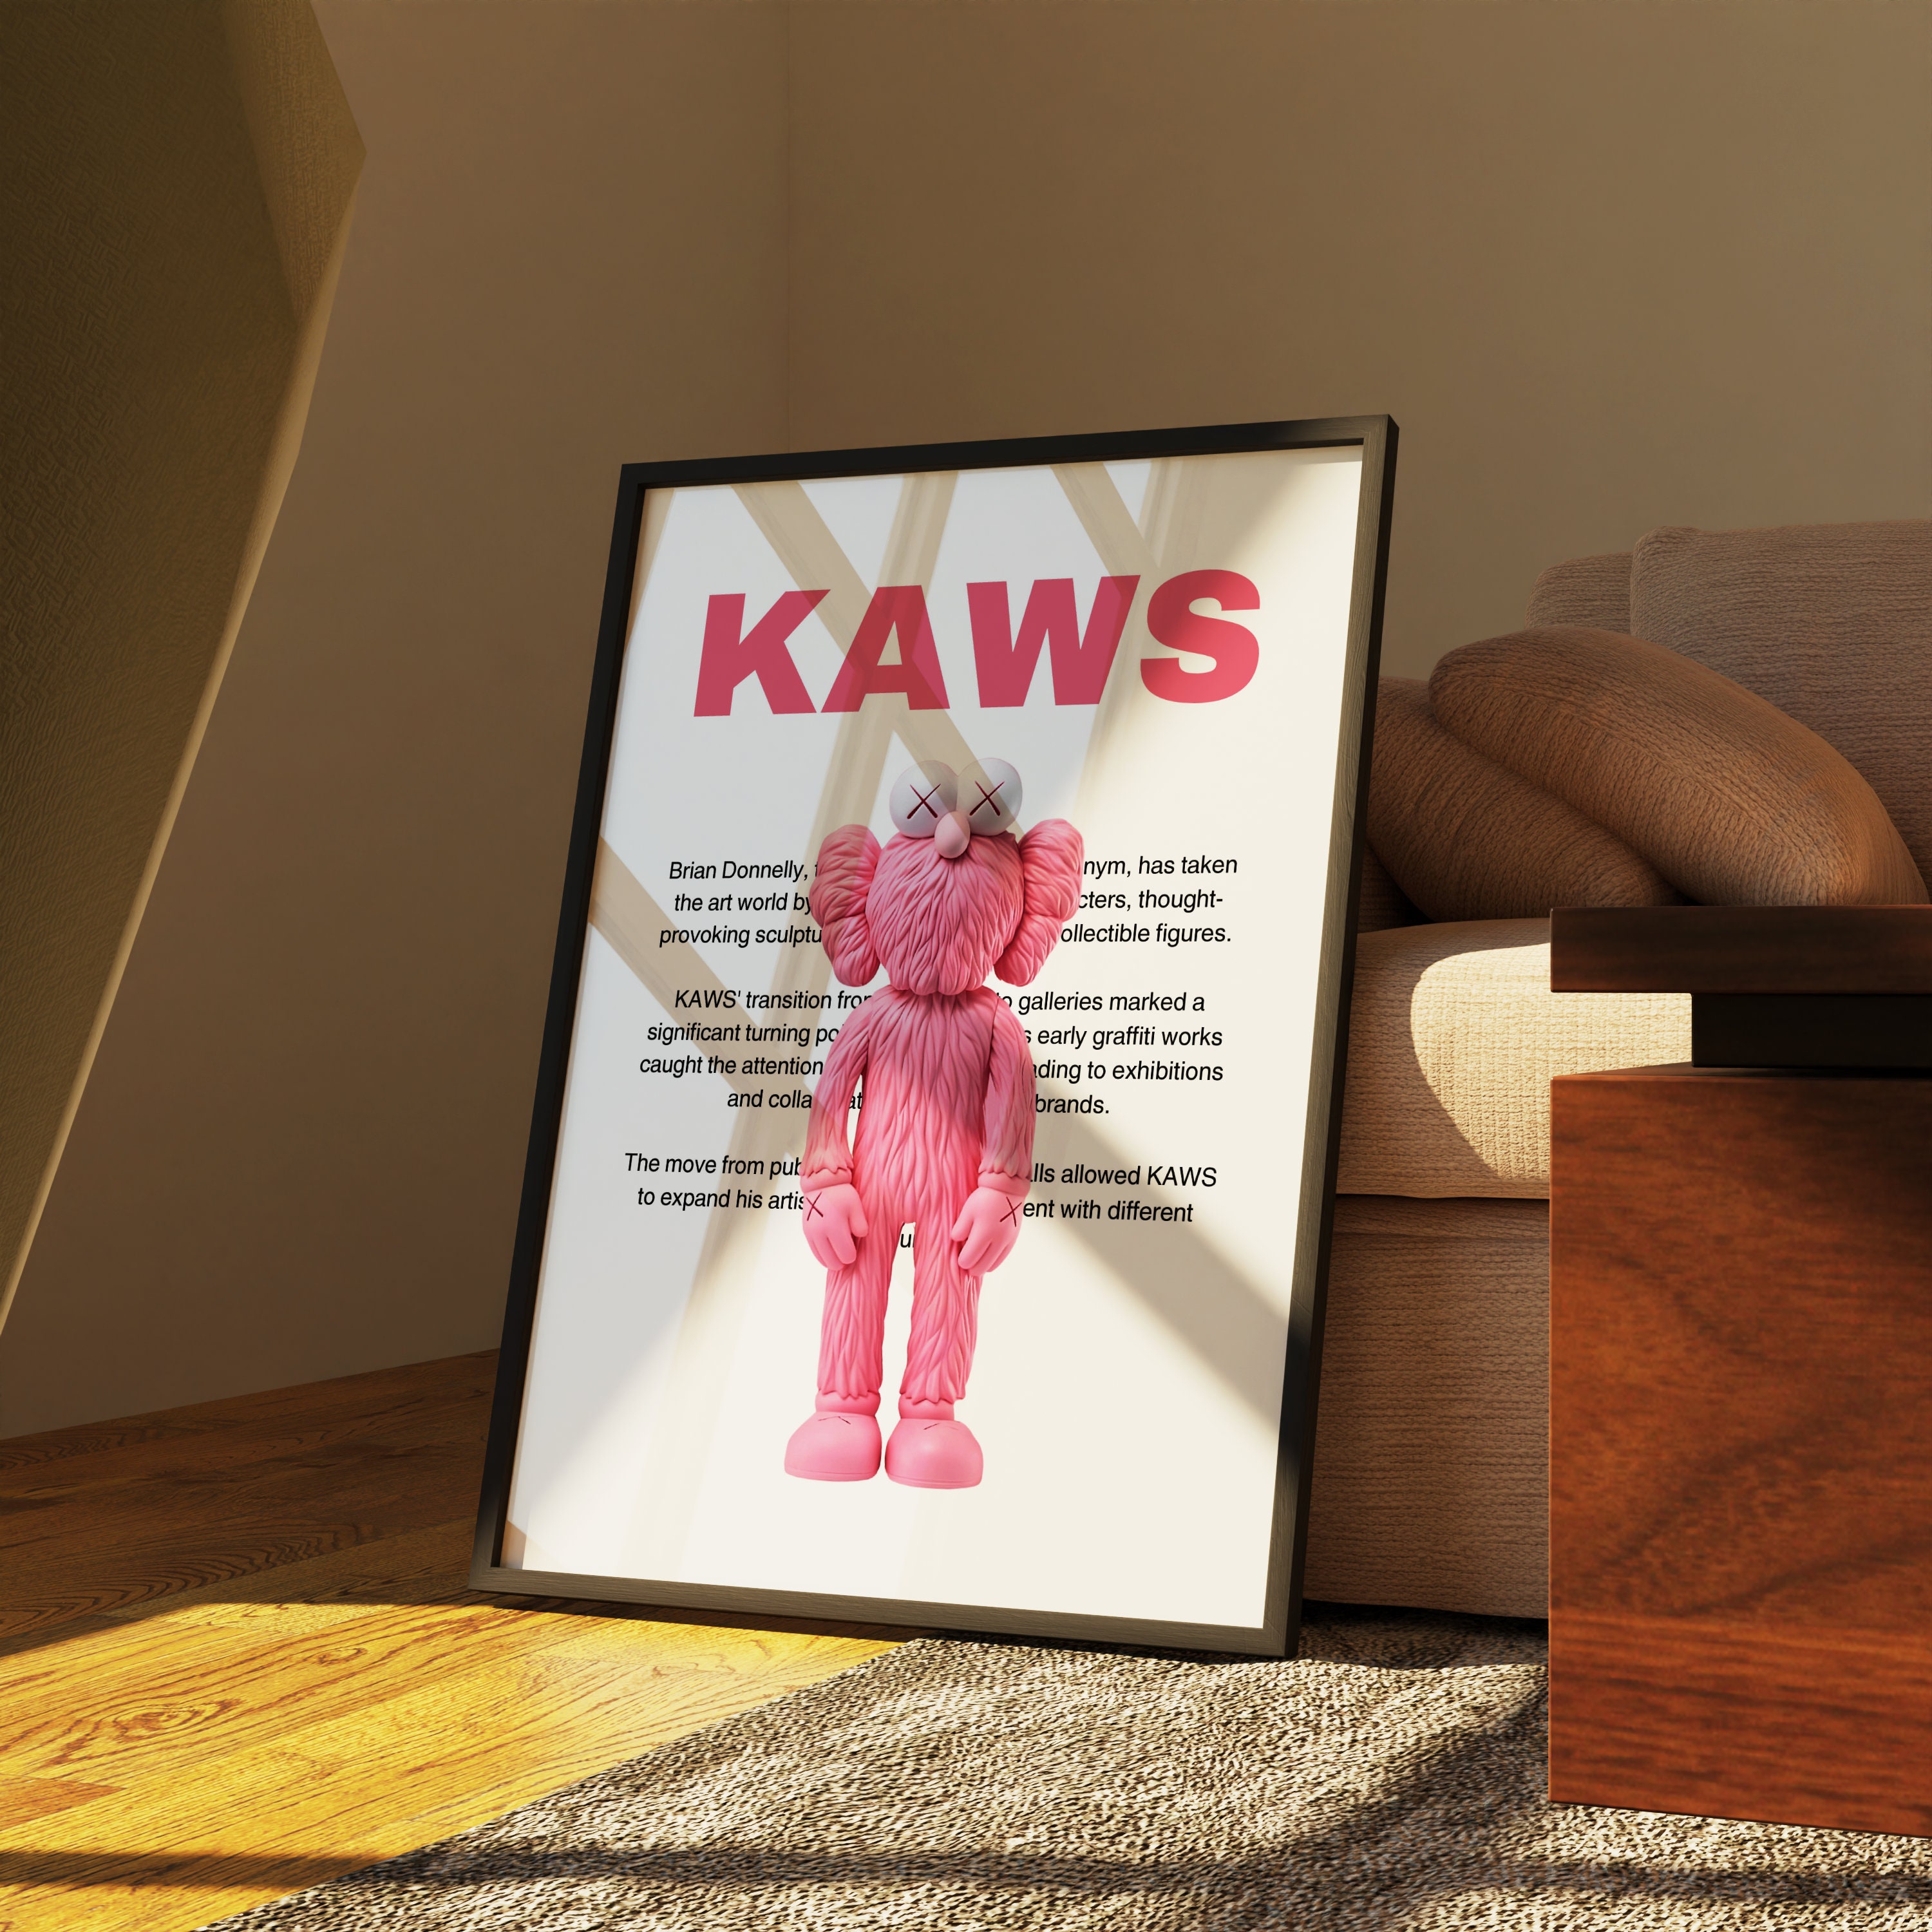  WLXKJ Girl Pink Kawss Poster Hypebeast room decor